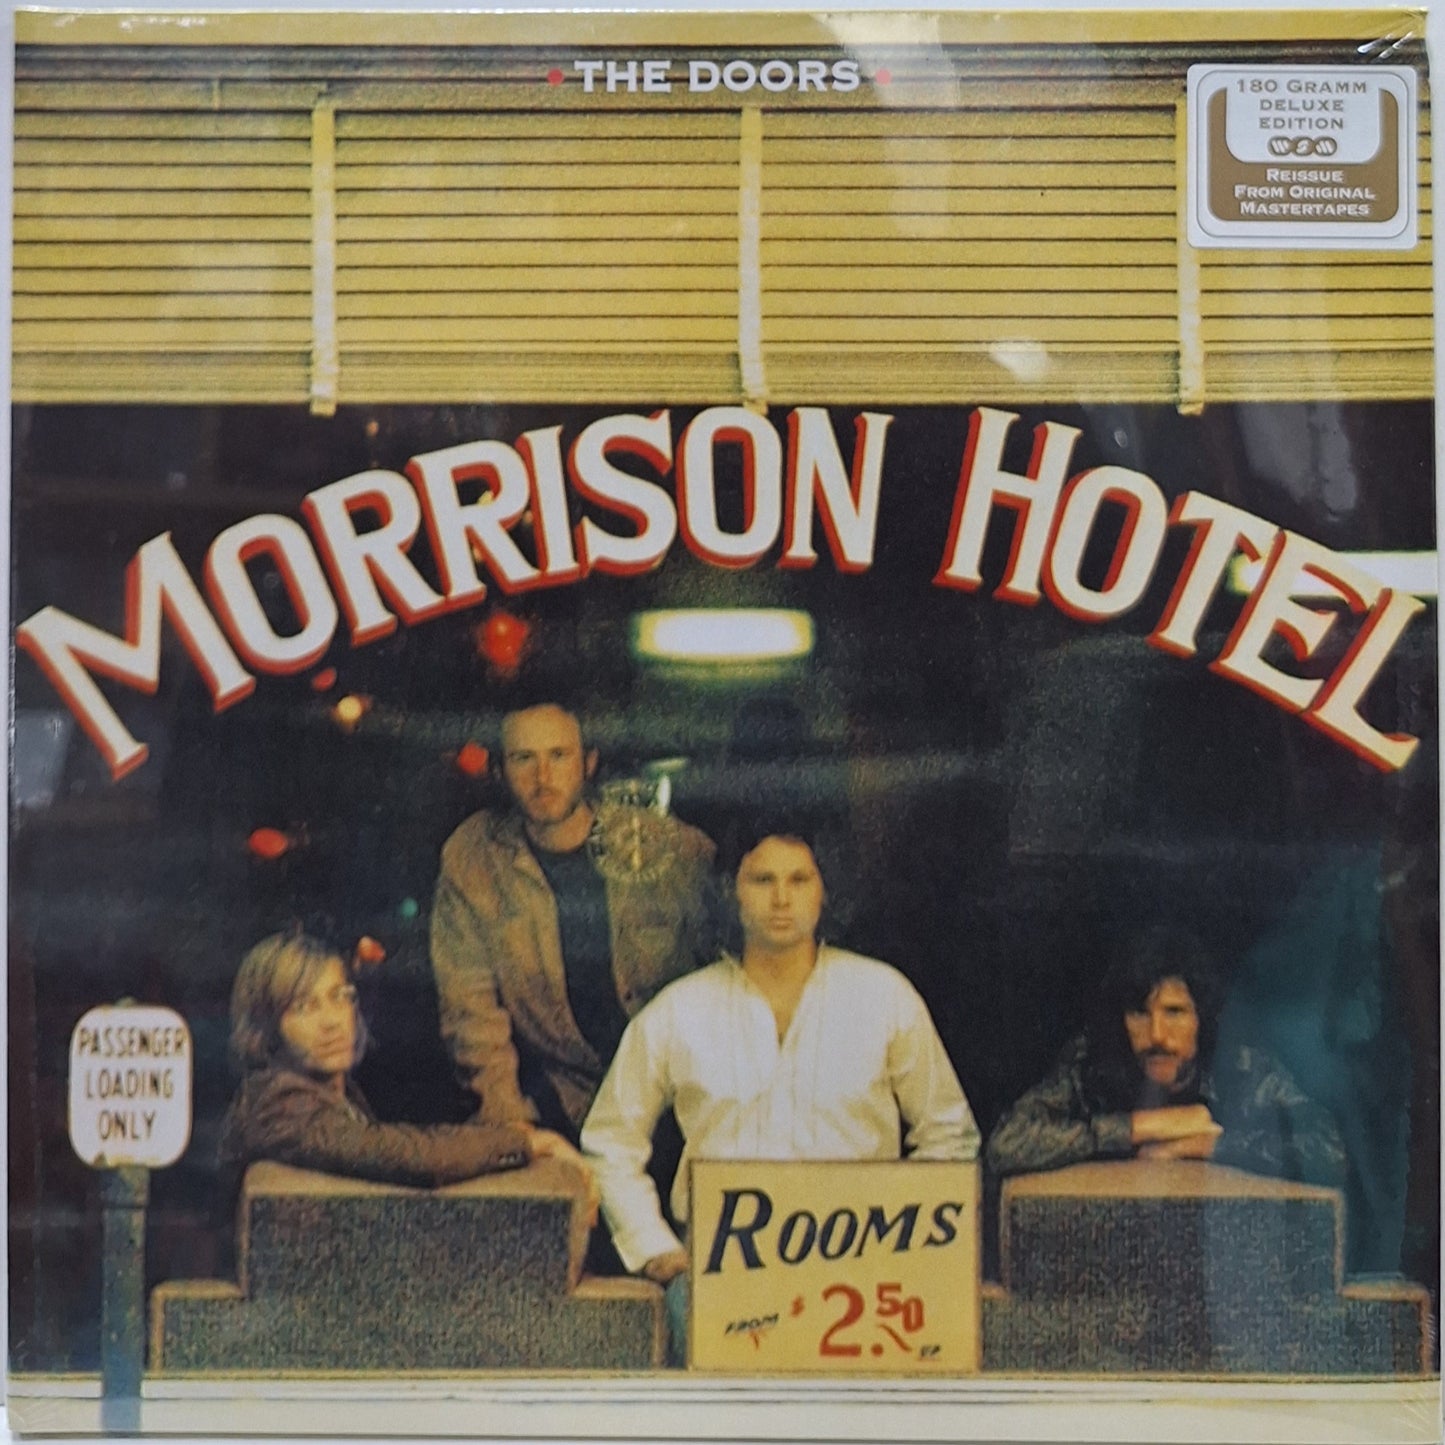 THE DOORS - MORRISON HOTEL LP